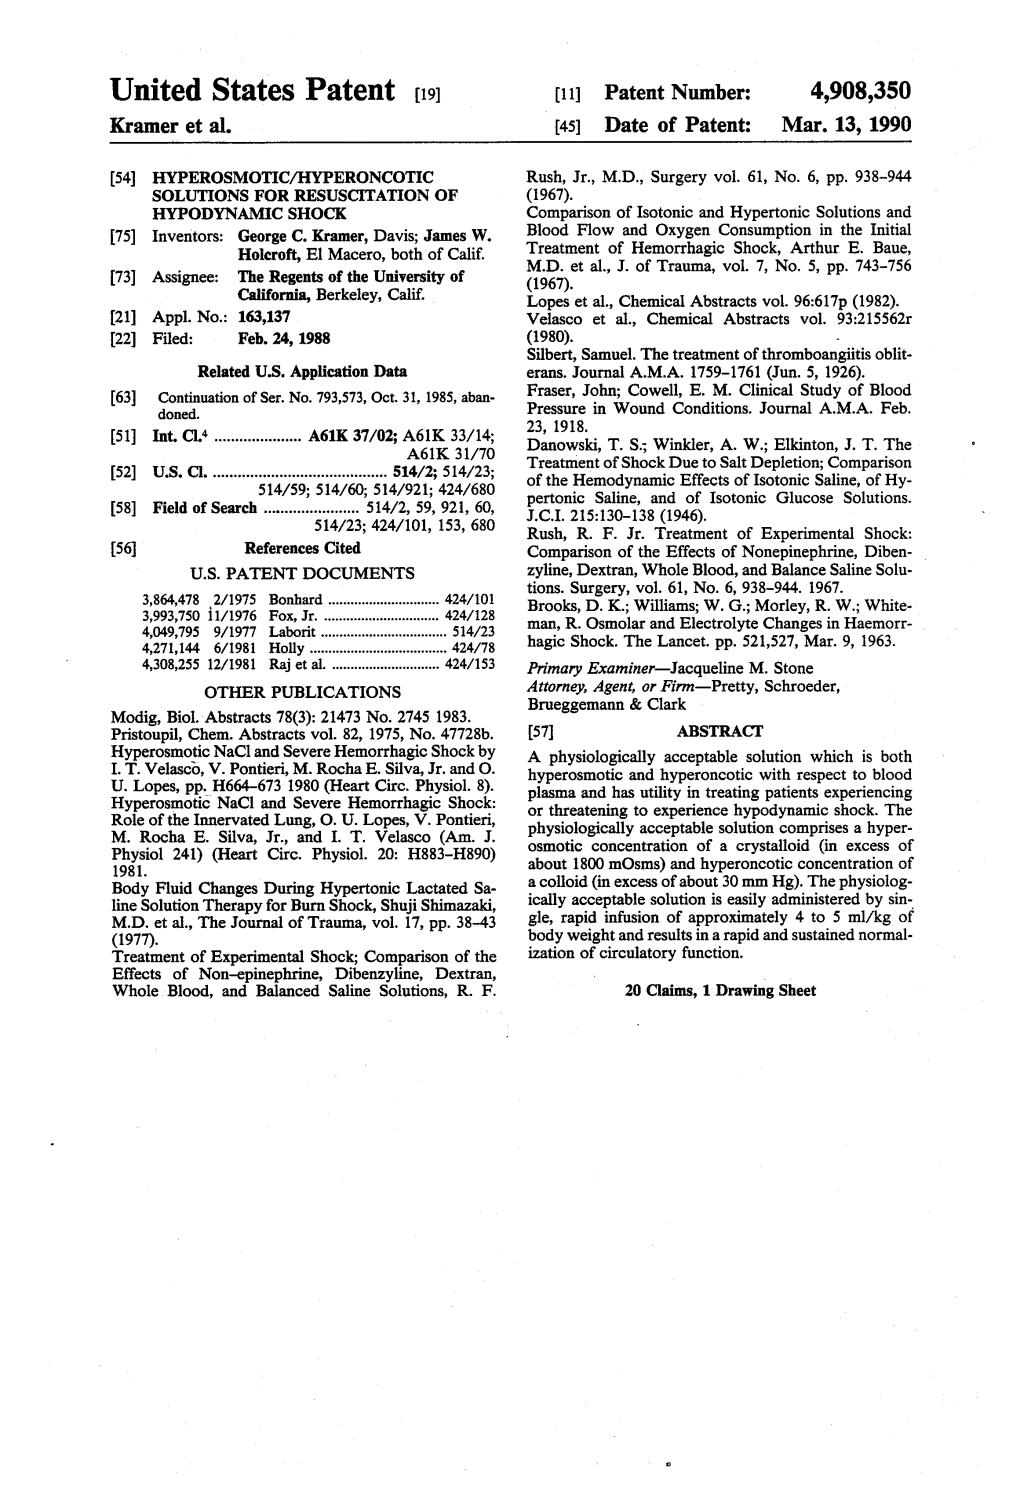 United States Patent (19) 11 Patent Number: 4,908,350 Kramer Et Al